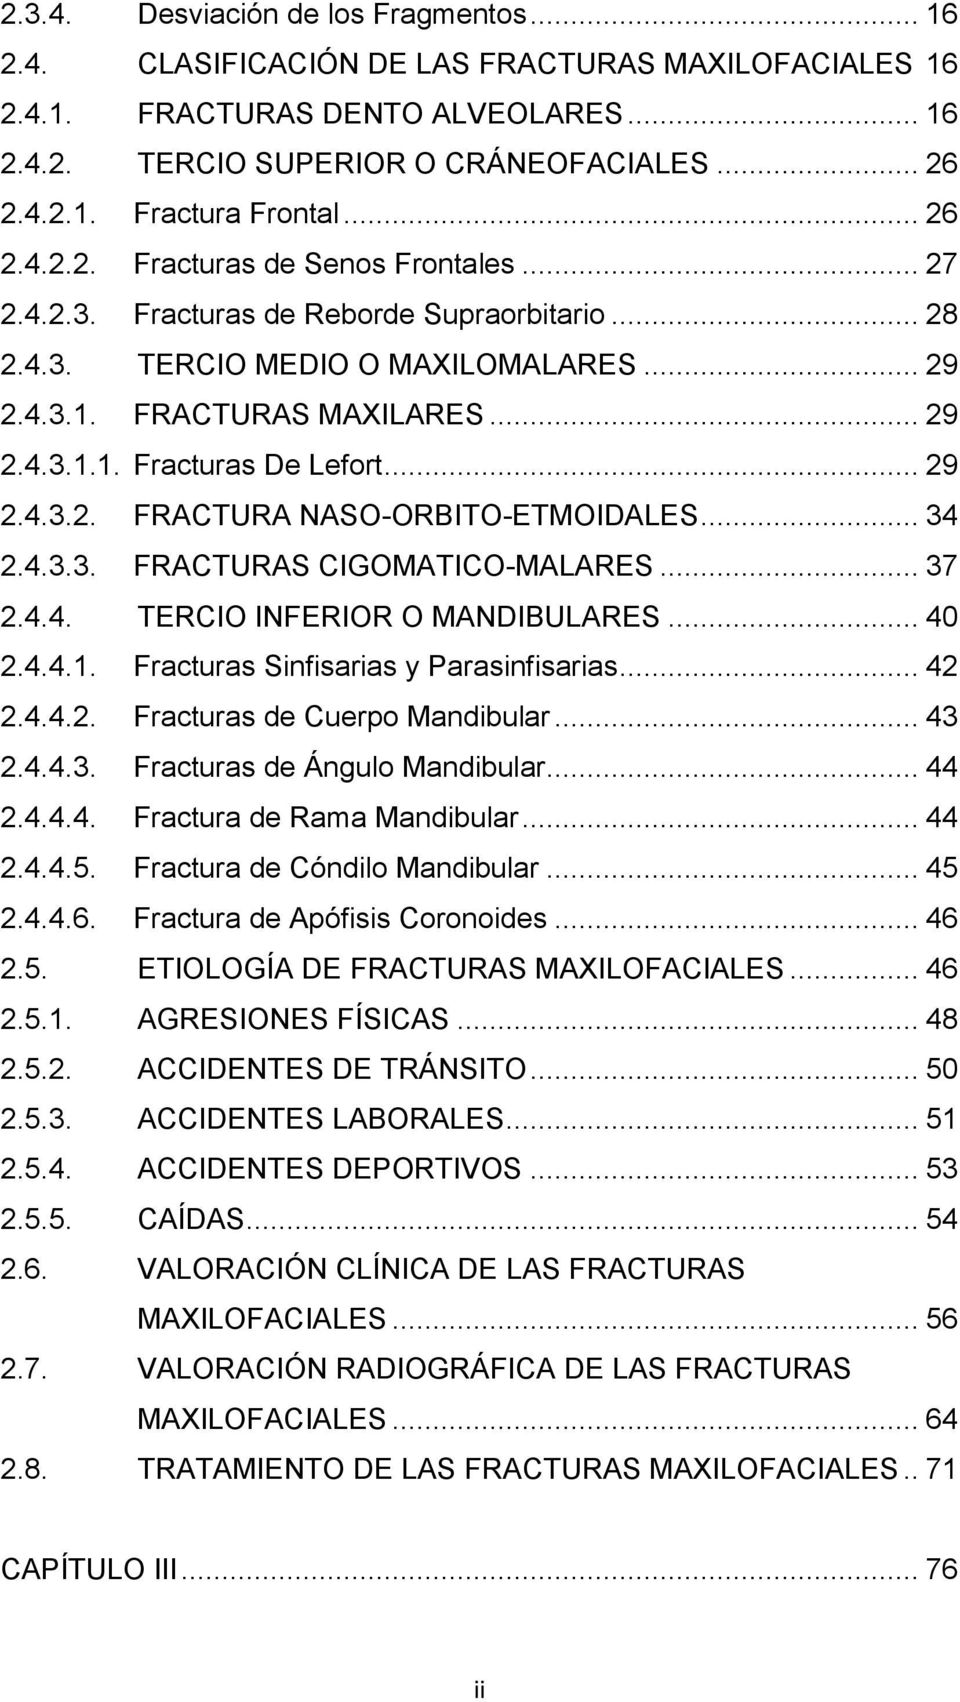 .. 29 2.4.3.2. FRACTURA NASO-ORBITO-ETMOIDALES... 34 2.4.3.3. FRACTURAS CIGOMATICO-MALARES... 37 2.4.4. TERCIO INFERIOR O MANDIBULARES... 40 2.4.4.1. Fracturas Sinfisarias y Parasinfisarias... 42 2.4.4.2. Fracturas de Cuerpo Mandibular.